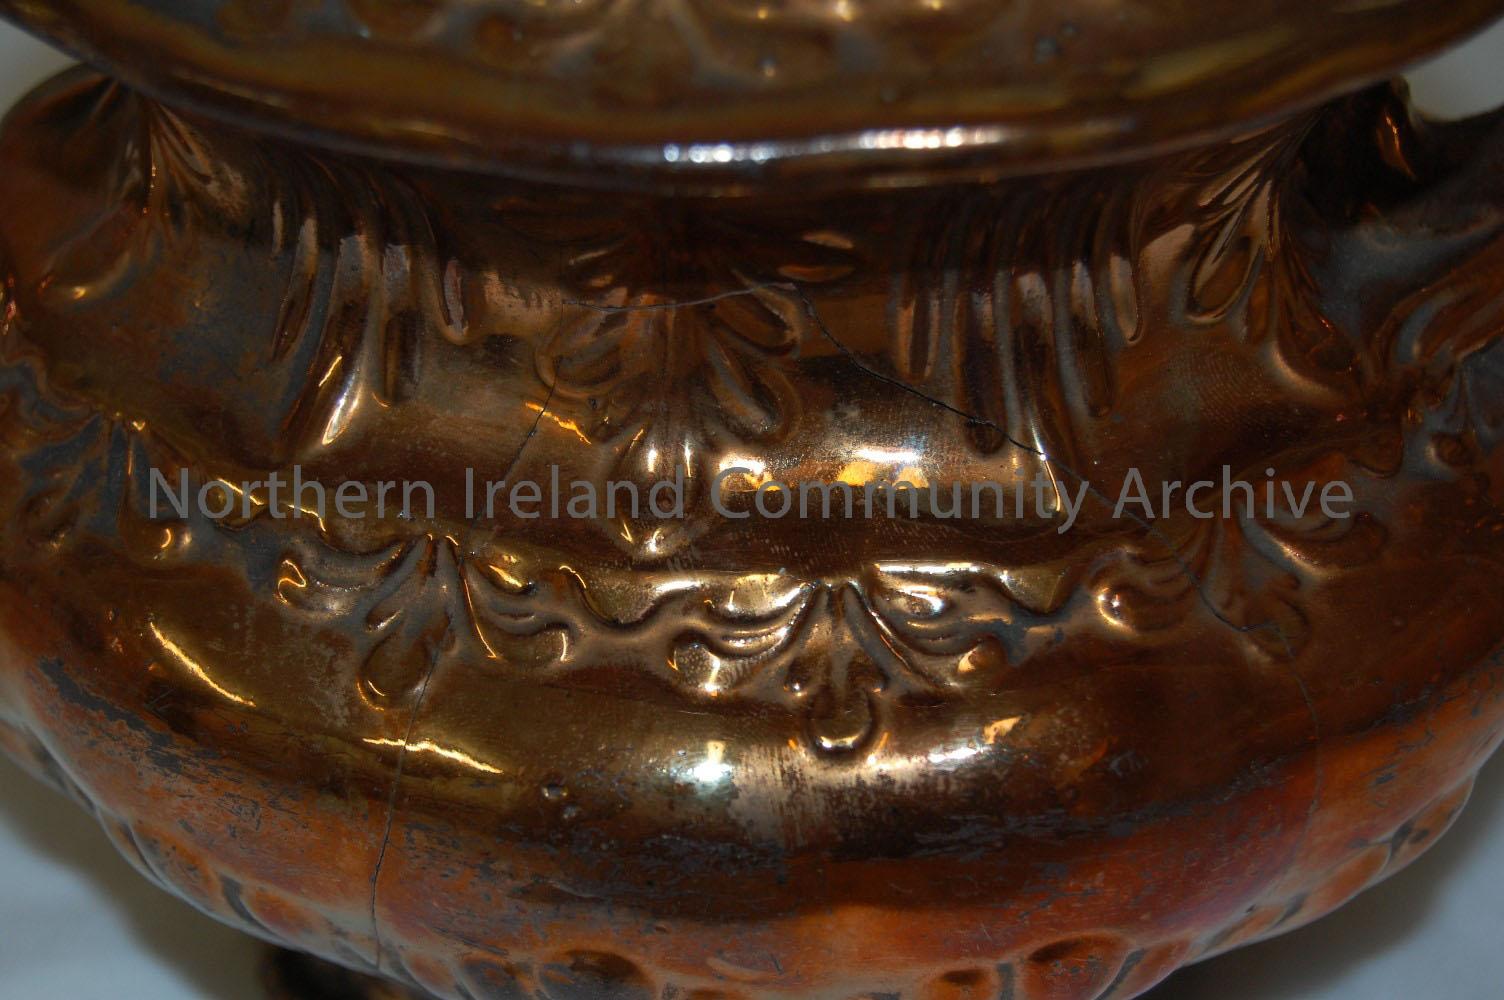 copper lustre teapot, lid missing – 1992.179 (2)